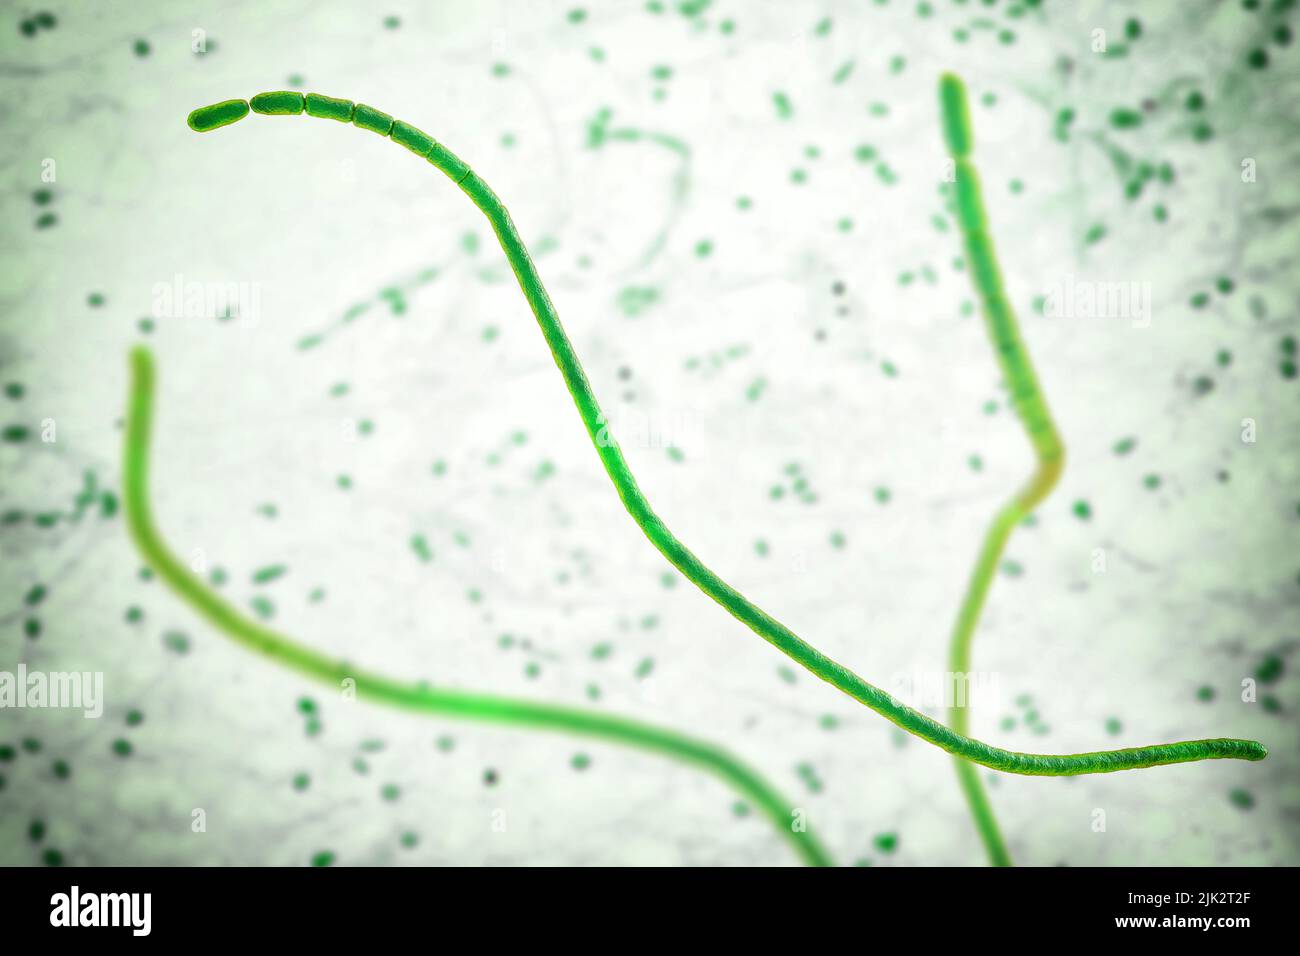 Abbildung zeigt die Filamente der Bakterien Thiomargarita magnifica. Mit einer Länge von bis zu 2 Zentimetern sind sie die größten Bakterien der Welt. Thiomargarita magnifica ist eine schwefeloxidierende Gammaproteobakterien, die erstmals 2009 in den tropischen Mangroven von Guadeloupe, Kleinen Antillen, entdeckt wurde. Stockfoto